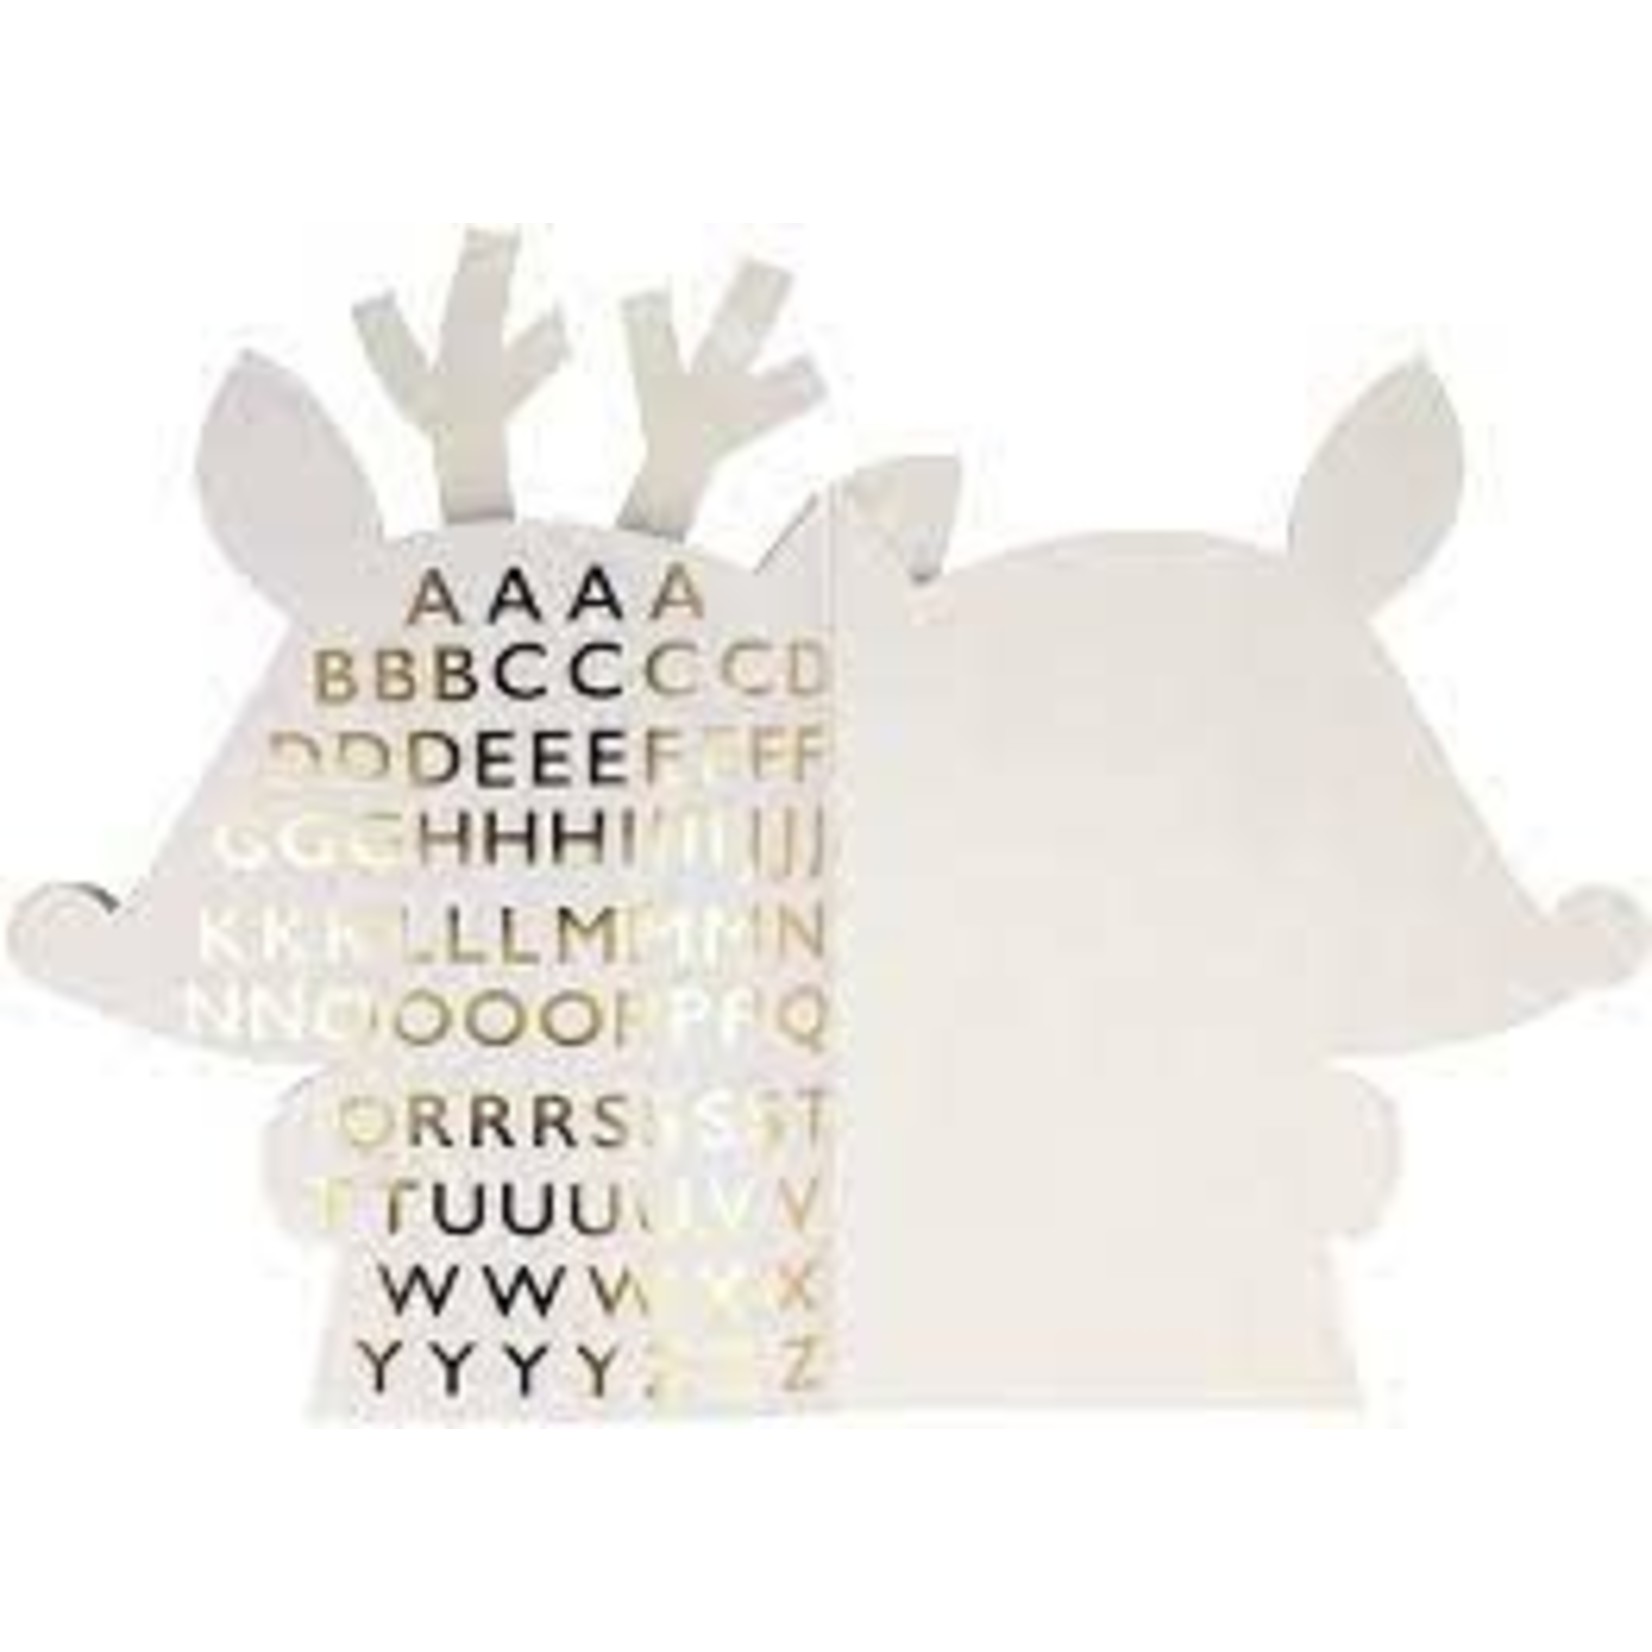 meri meri reindeer sticker and sketch book